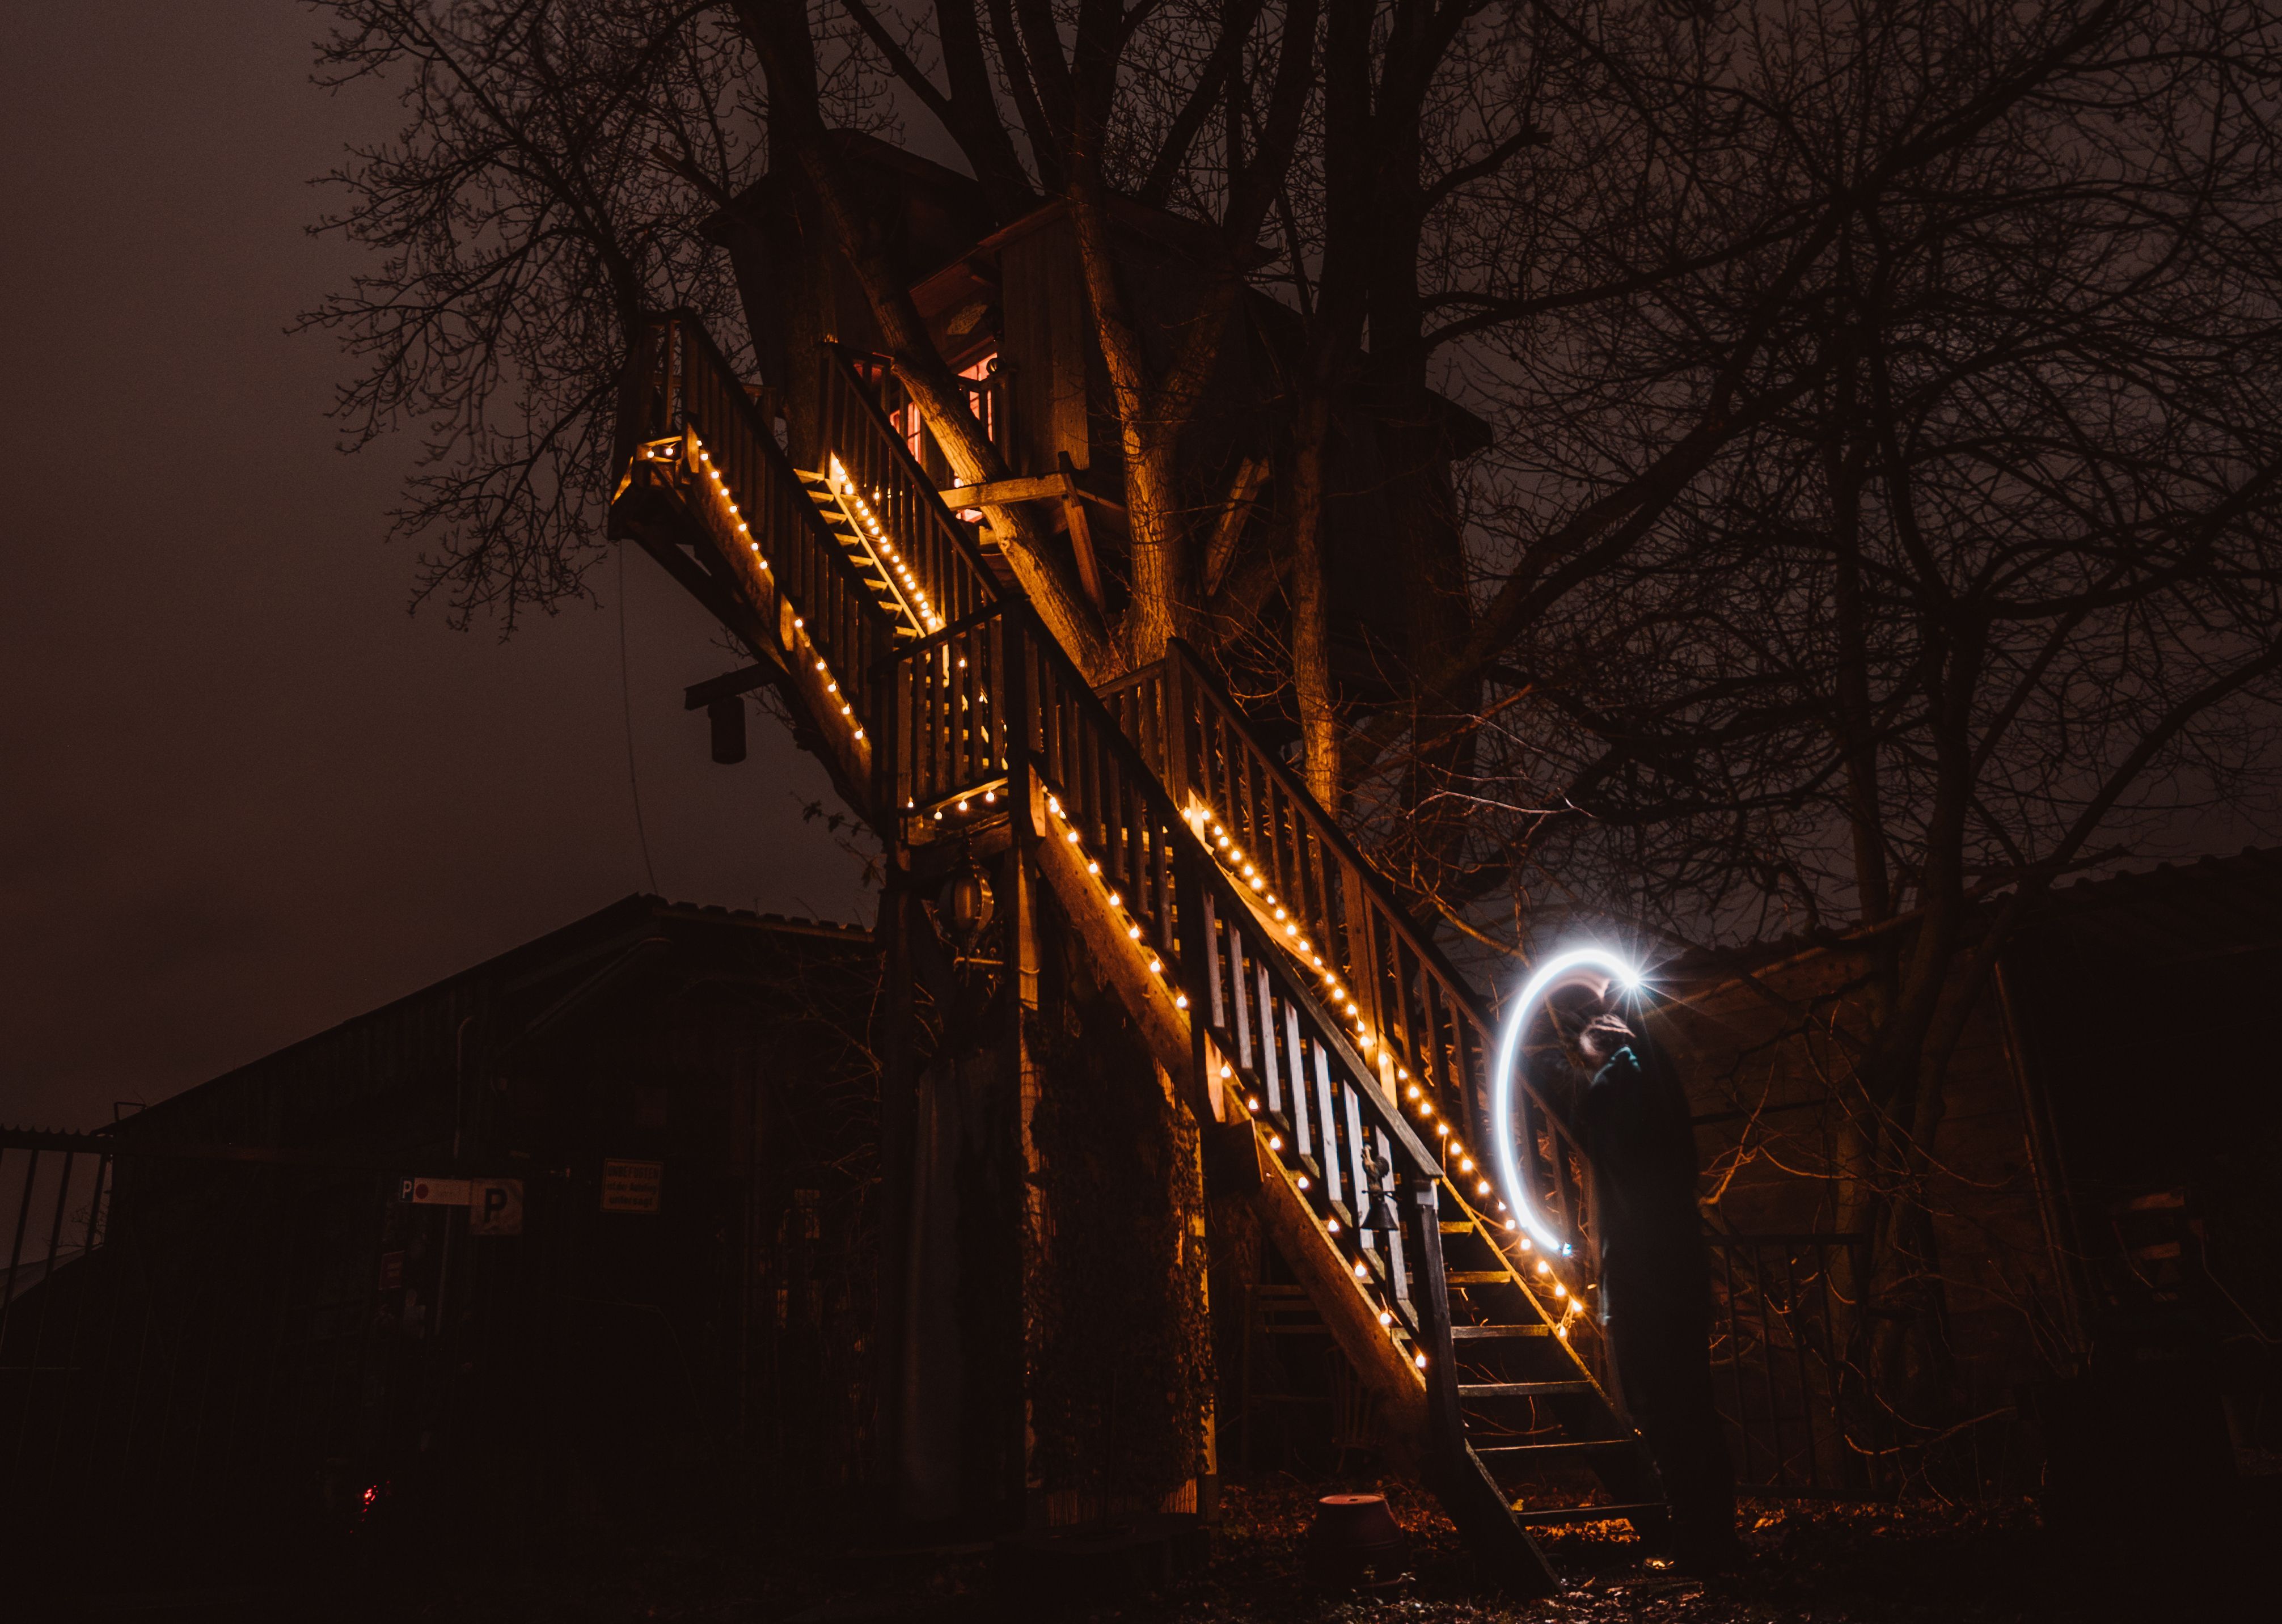 Baumhaushotel im Dunkeln, schön beleuchtete Treppe und Lichtspiel mit Taschenlampe